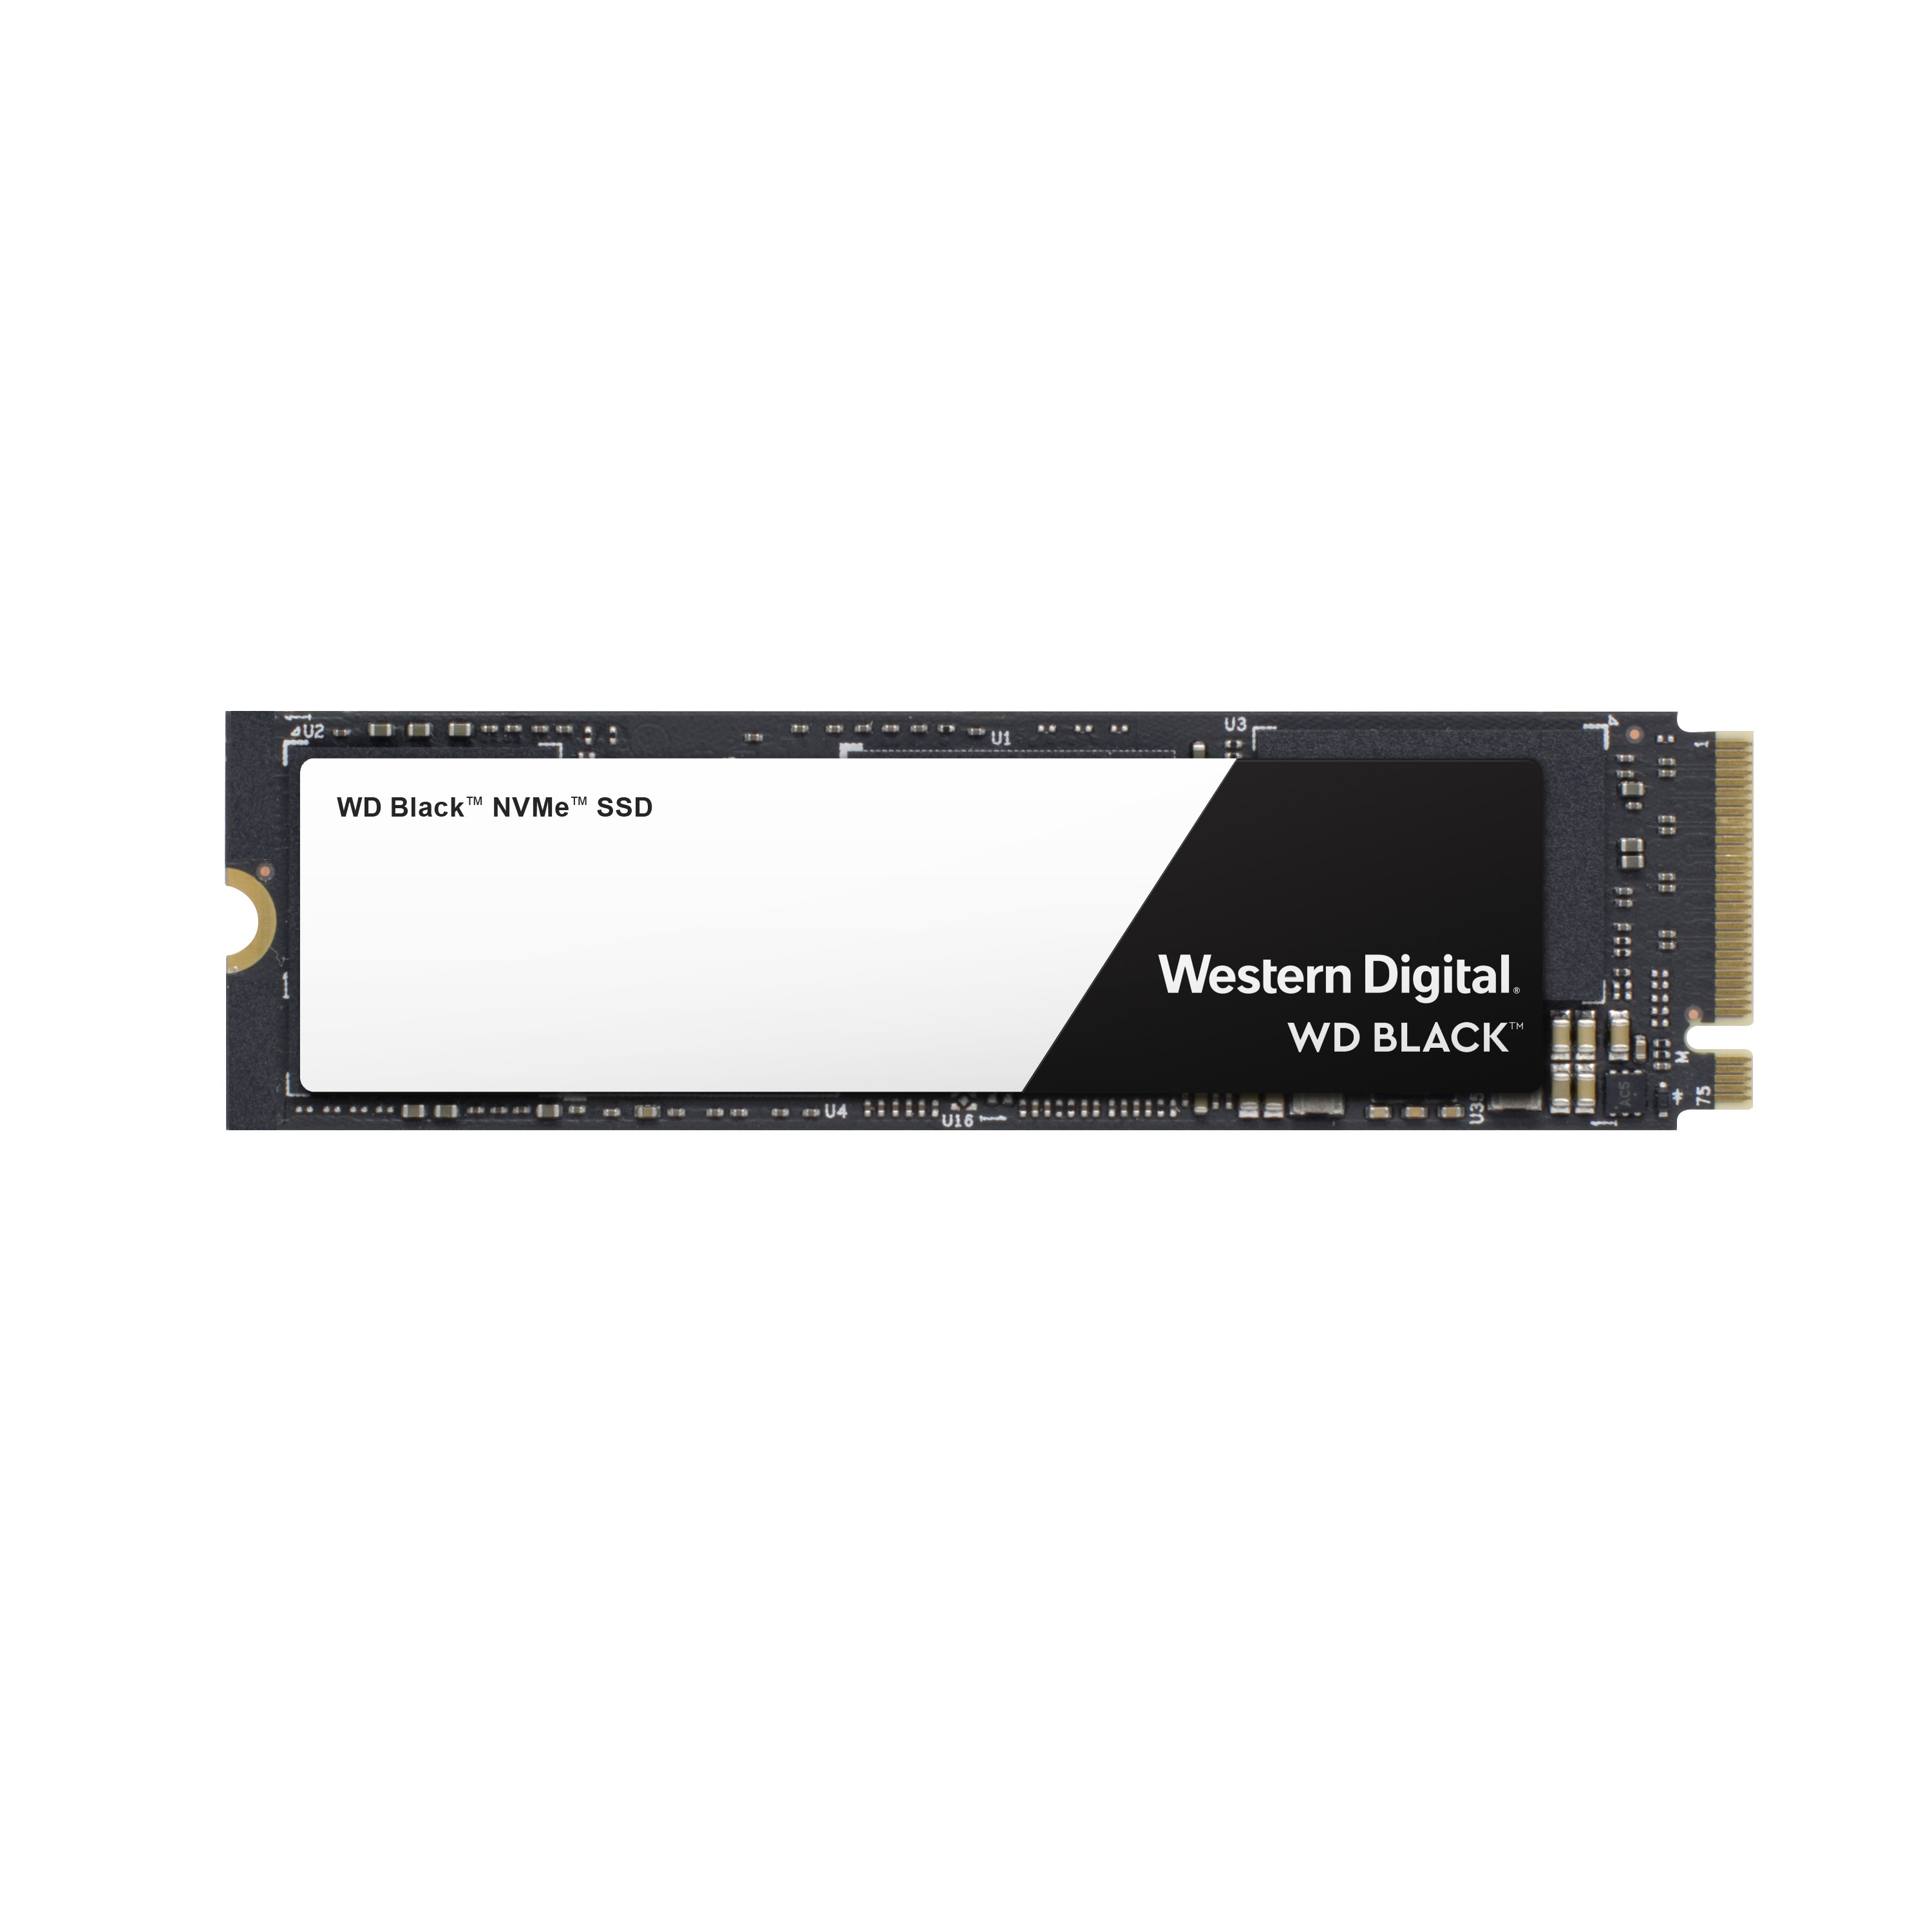 【圖說三】Western Digital WD Black NVMe SSD，其卓越的連續讀取速度與寫入效能為需.jpg